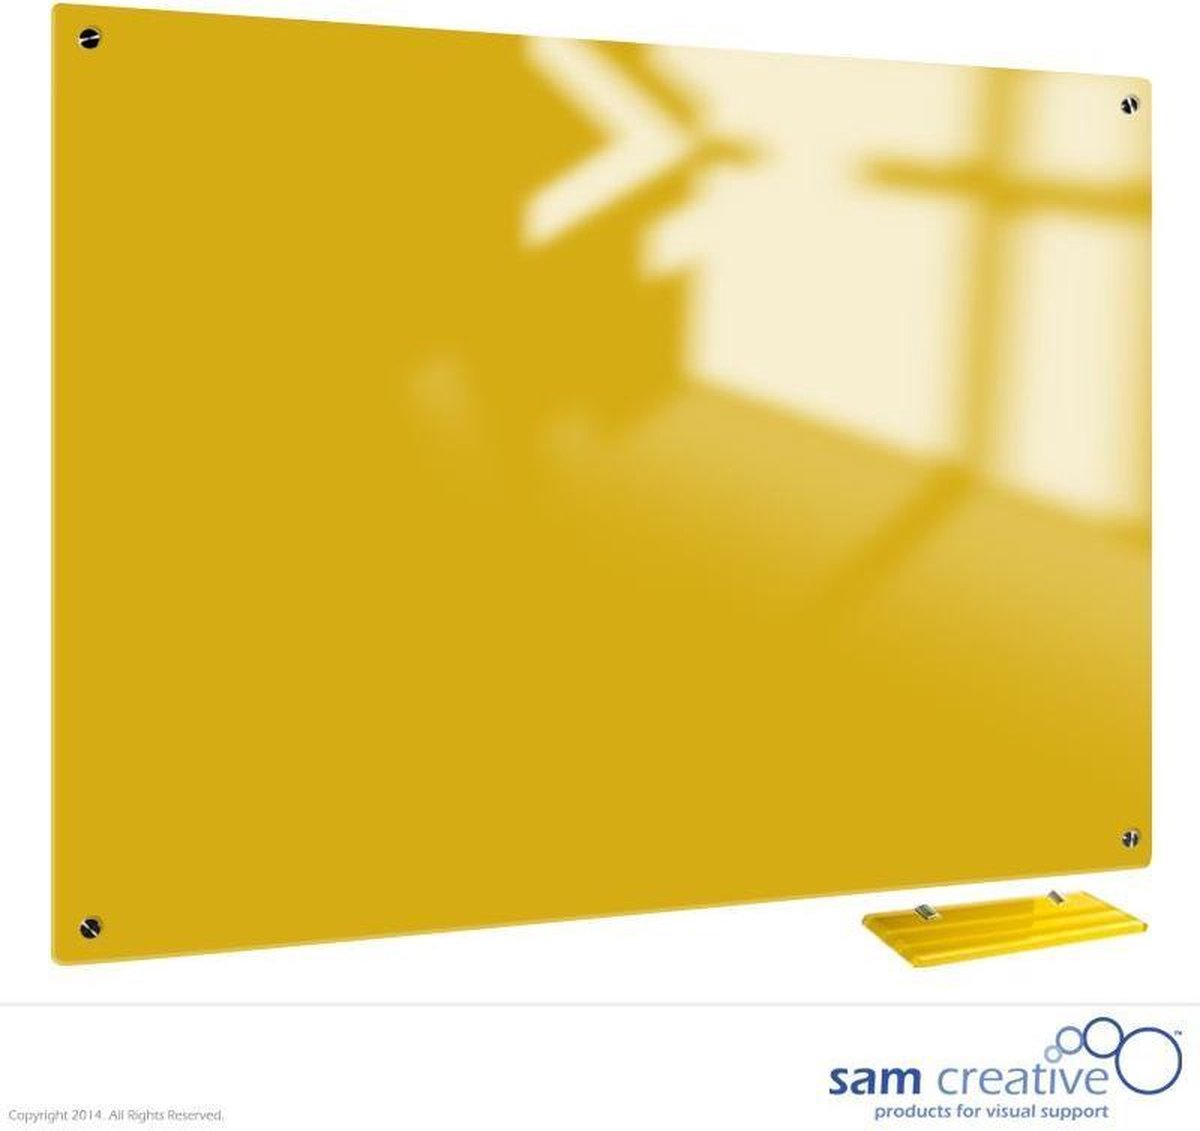 Whiteboard Glas Canary Yellow 45x60 cm | sam creative whiteboard | Yellow Magnetic whiteboard | Glassboard Magnetic - Sam Creative